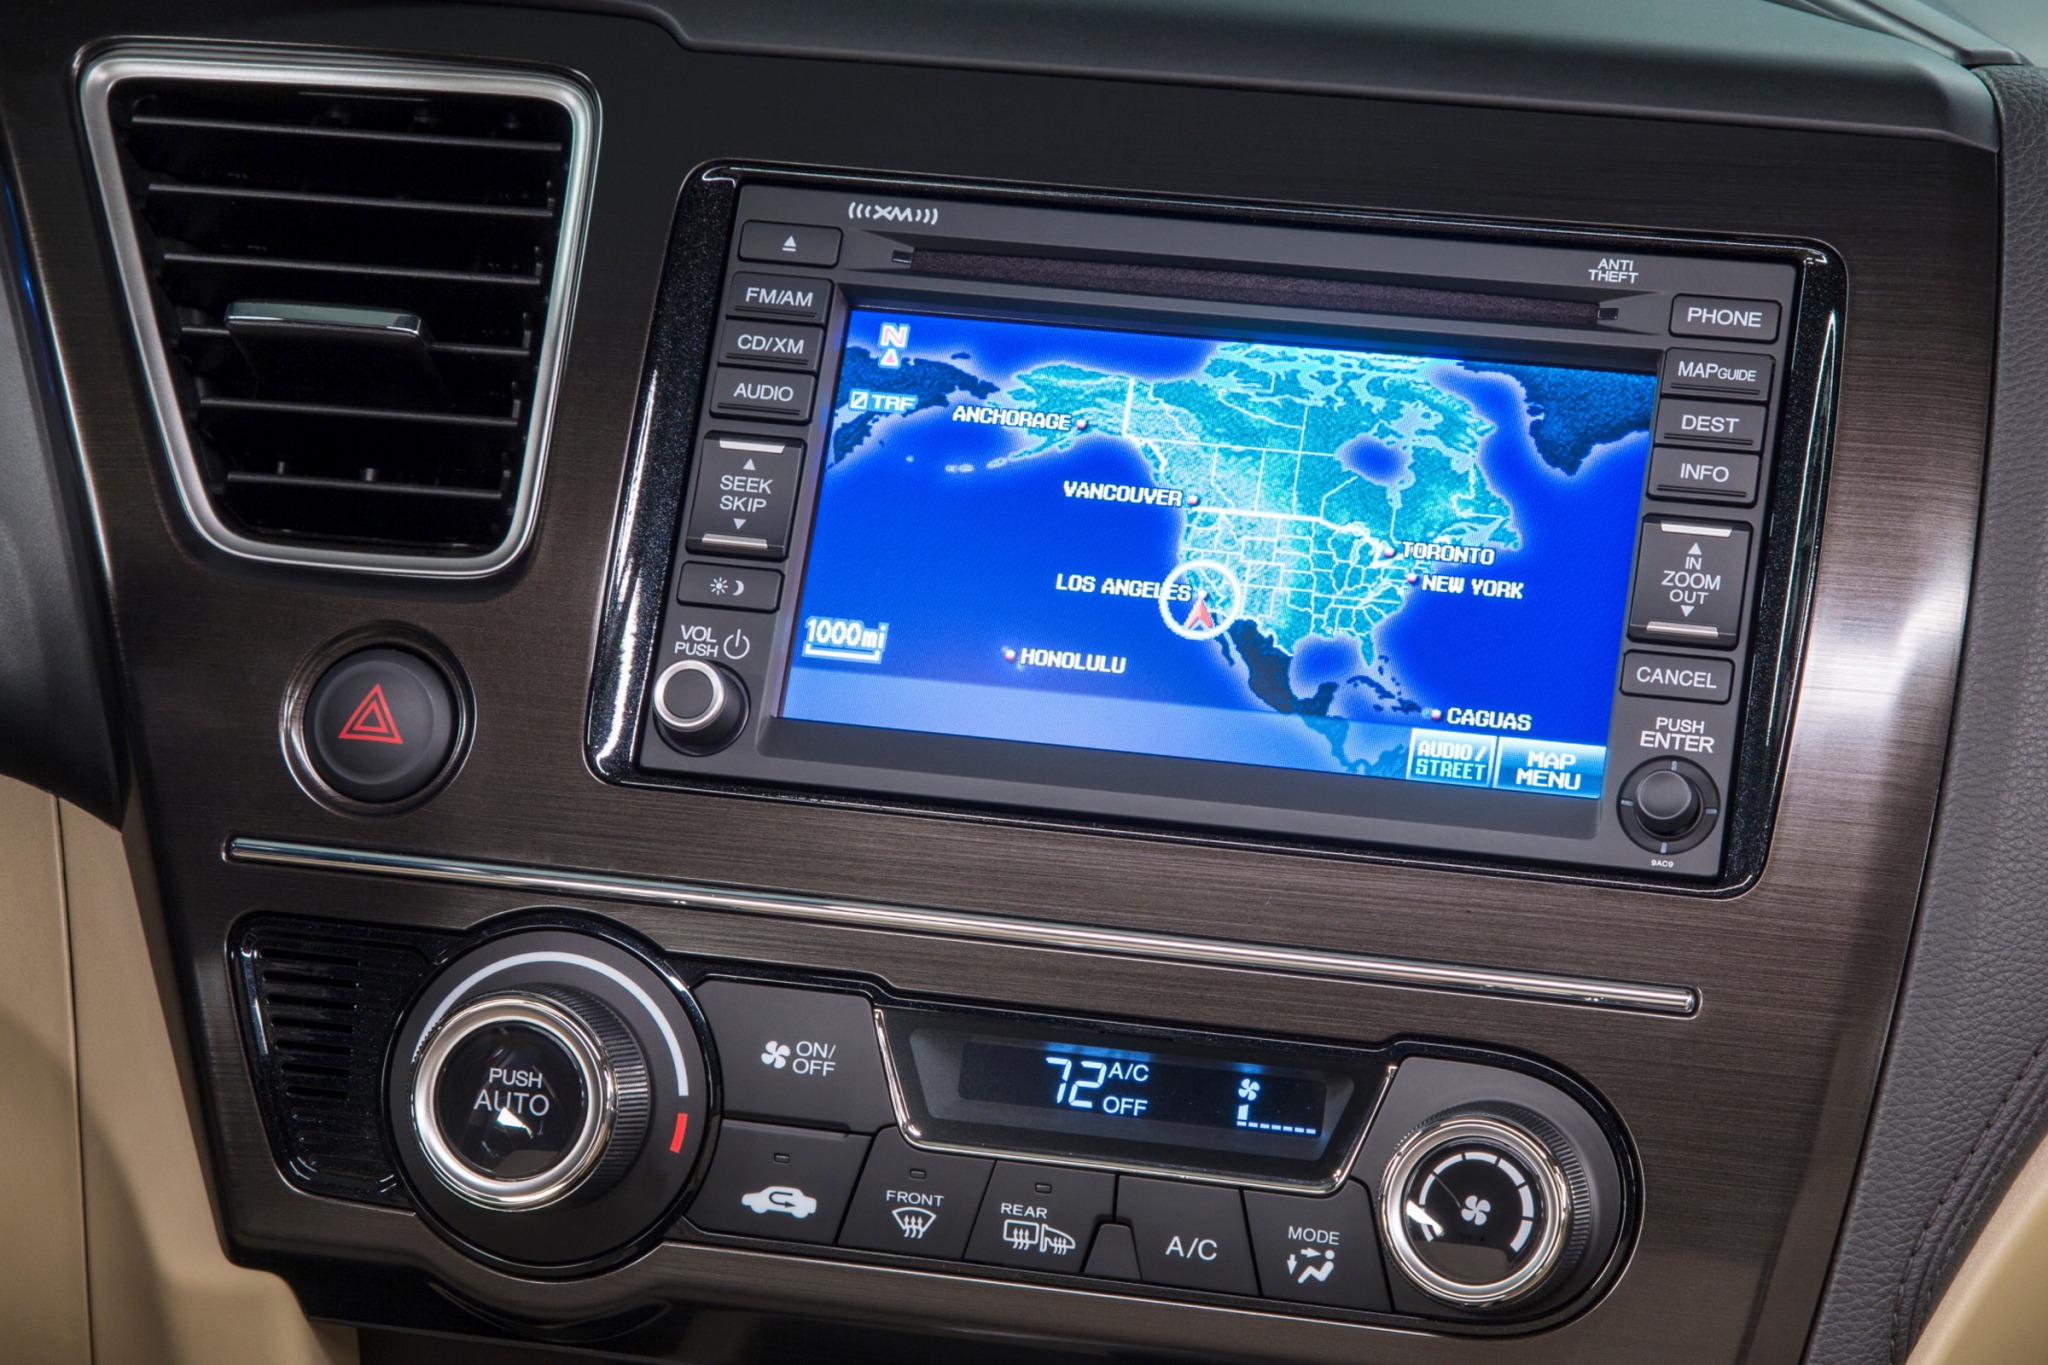 2013 Honda Civic EX-L Sedan Navigation System